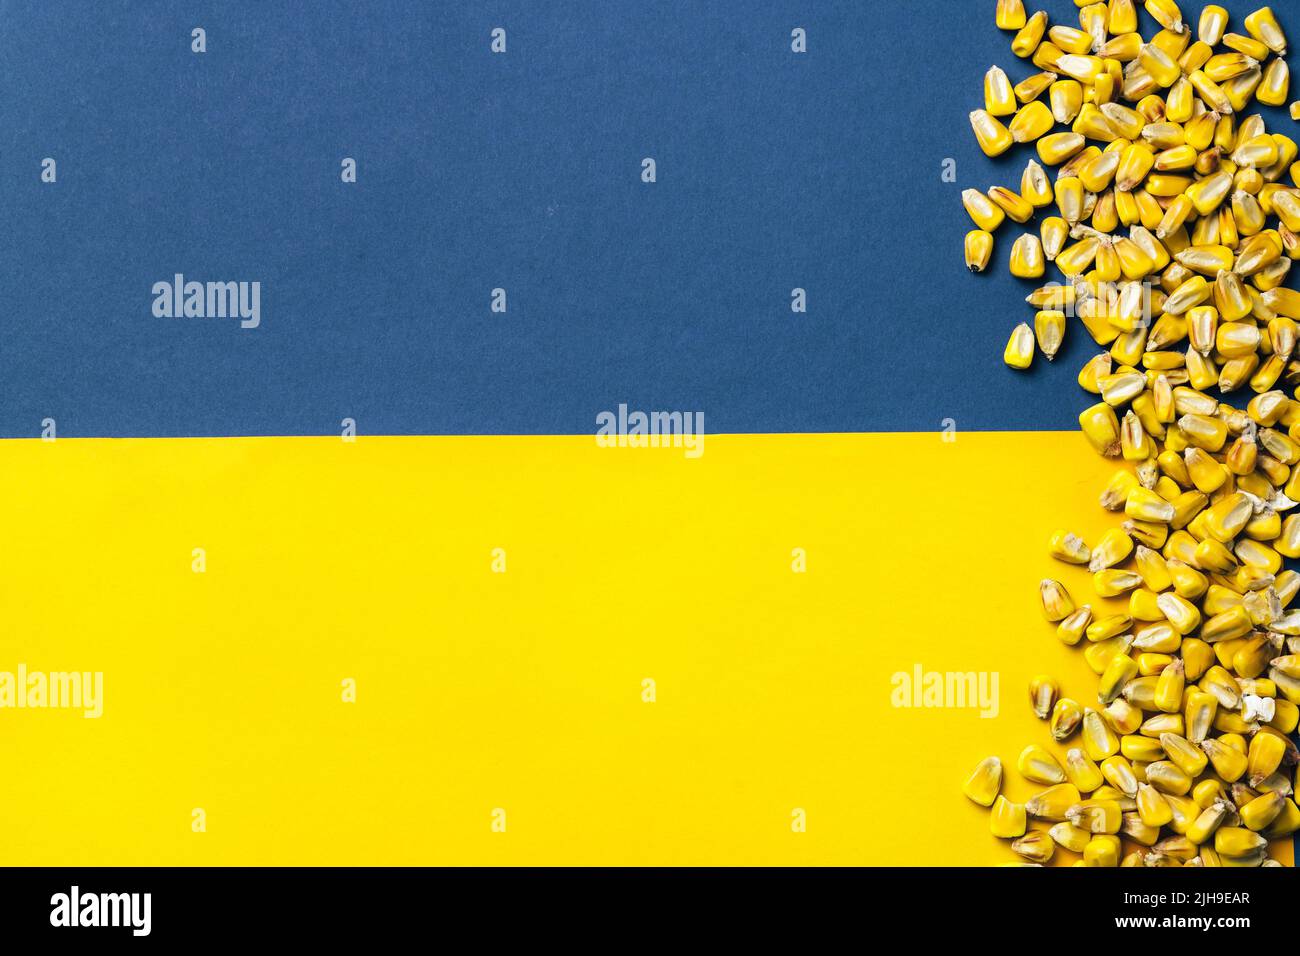 Maiskörner auf ukrainischer Flagge Hintergrund. Globale und europäische Getreide- und Weizenkrise nach Russlands Invasion der Ukraine 2022. Embargo und Sanktionen für die Ausfuhr von Getreide Stockfoto